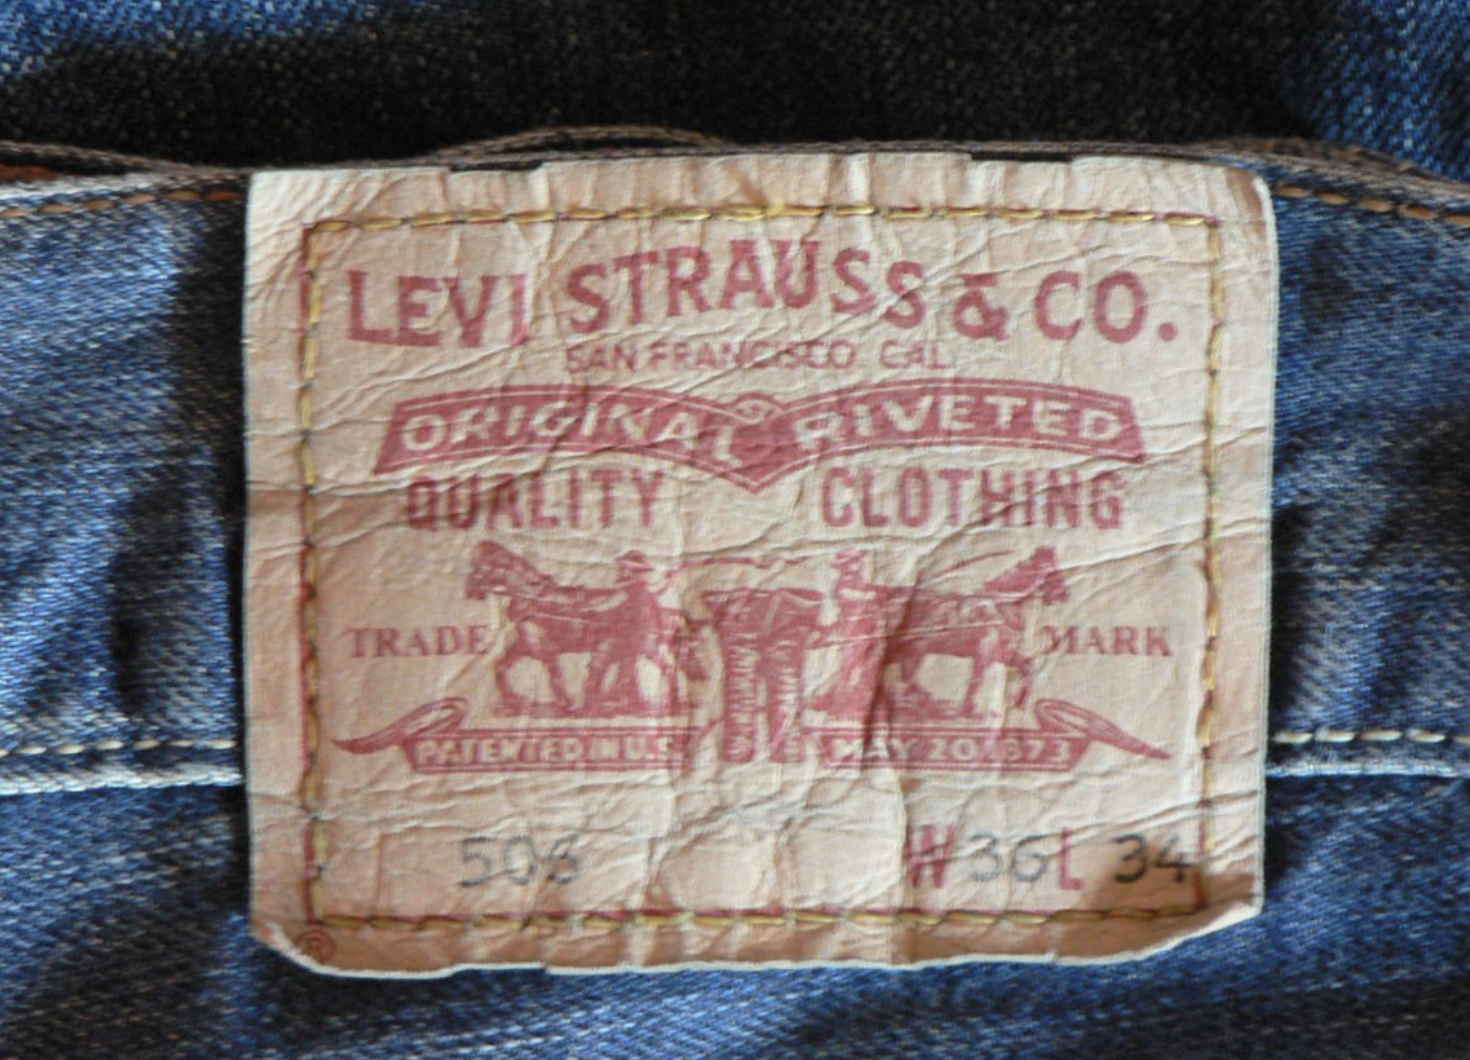 Levi's jeans label